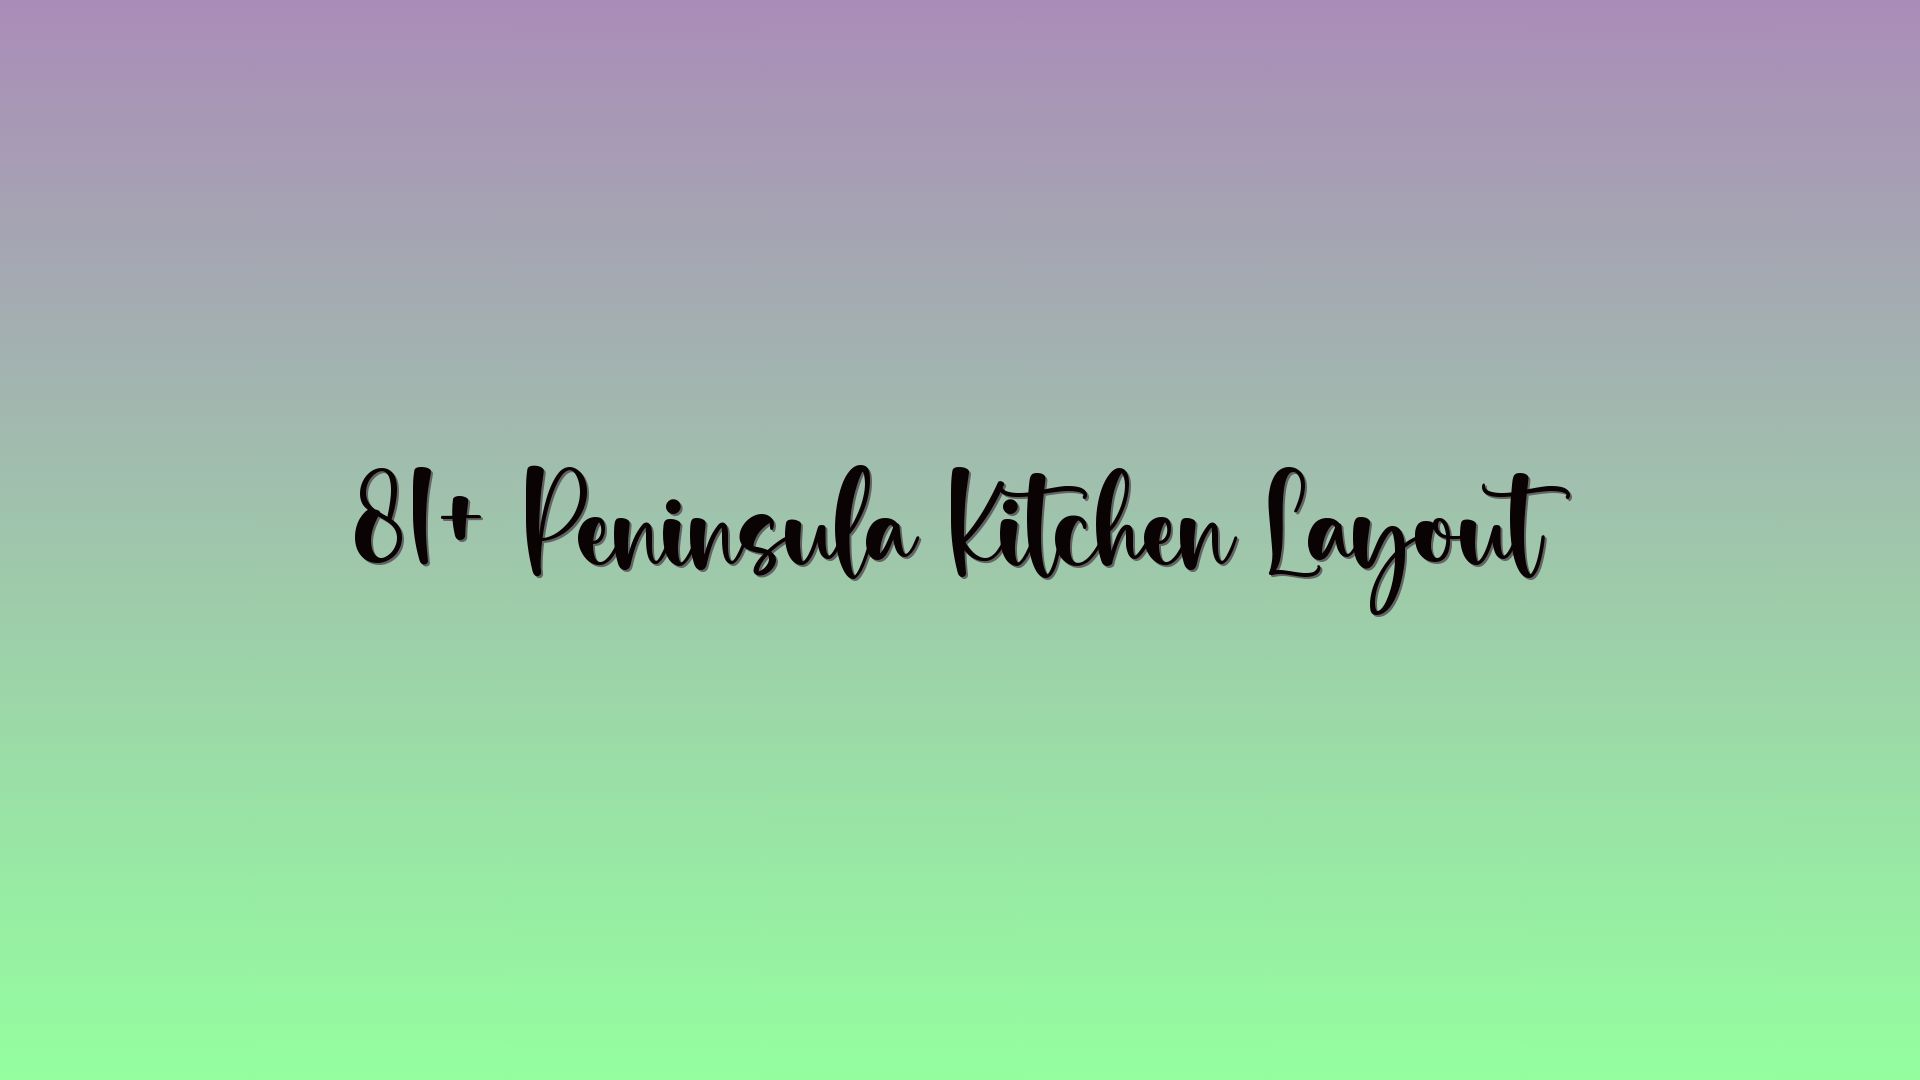 81+ Peninsula Kitchen Layout